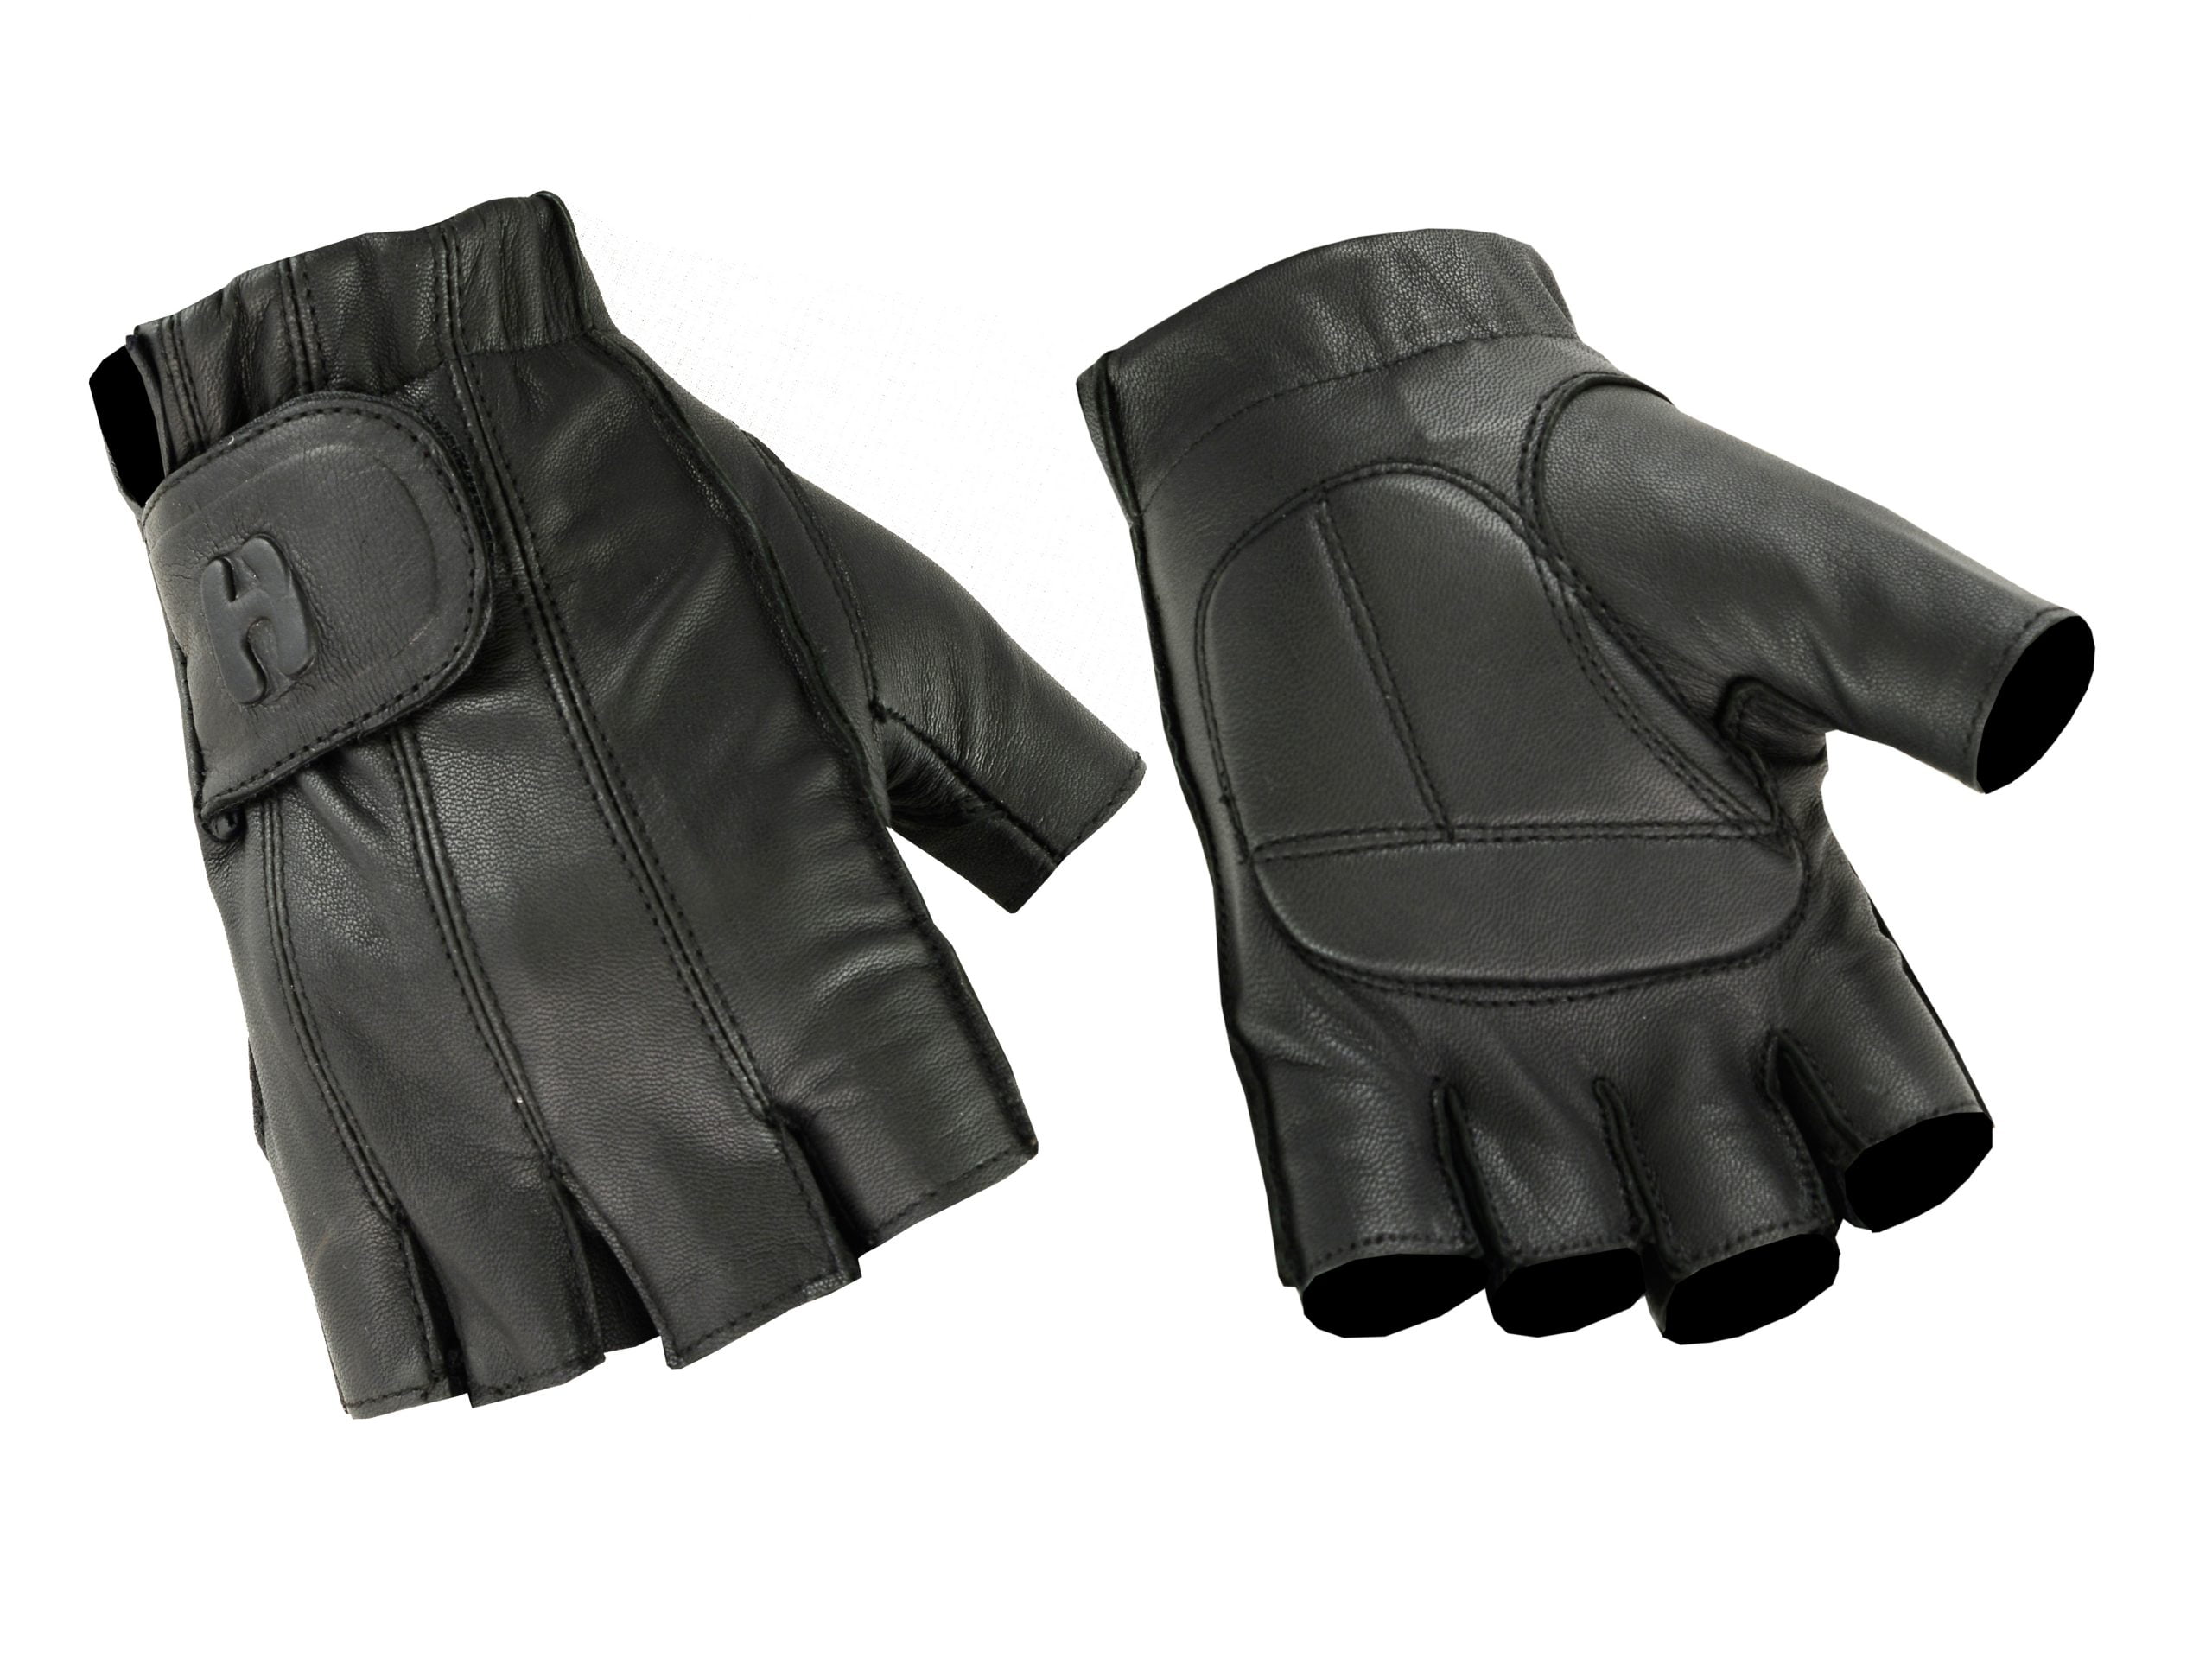 Black Leather Fingerless Gloves #G160